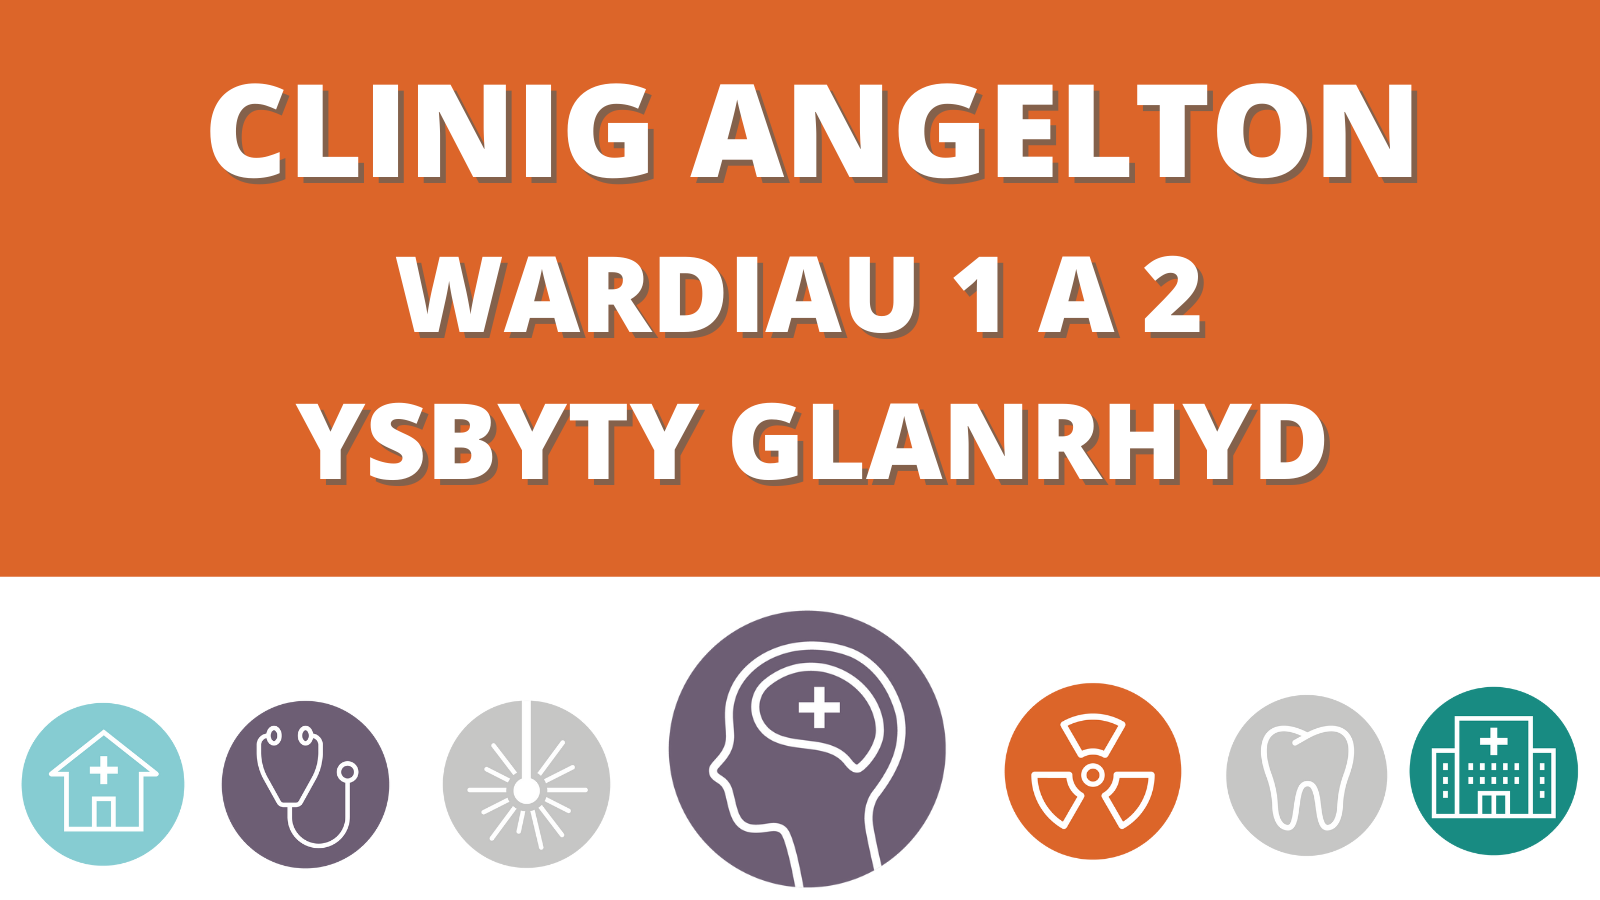 Clinig Angelton Wardiau 1 a 2 - Ysbyty Glanrhyd